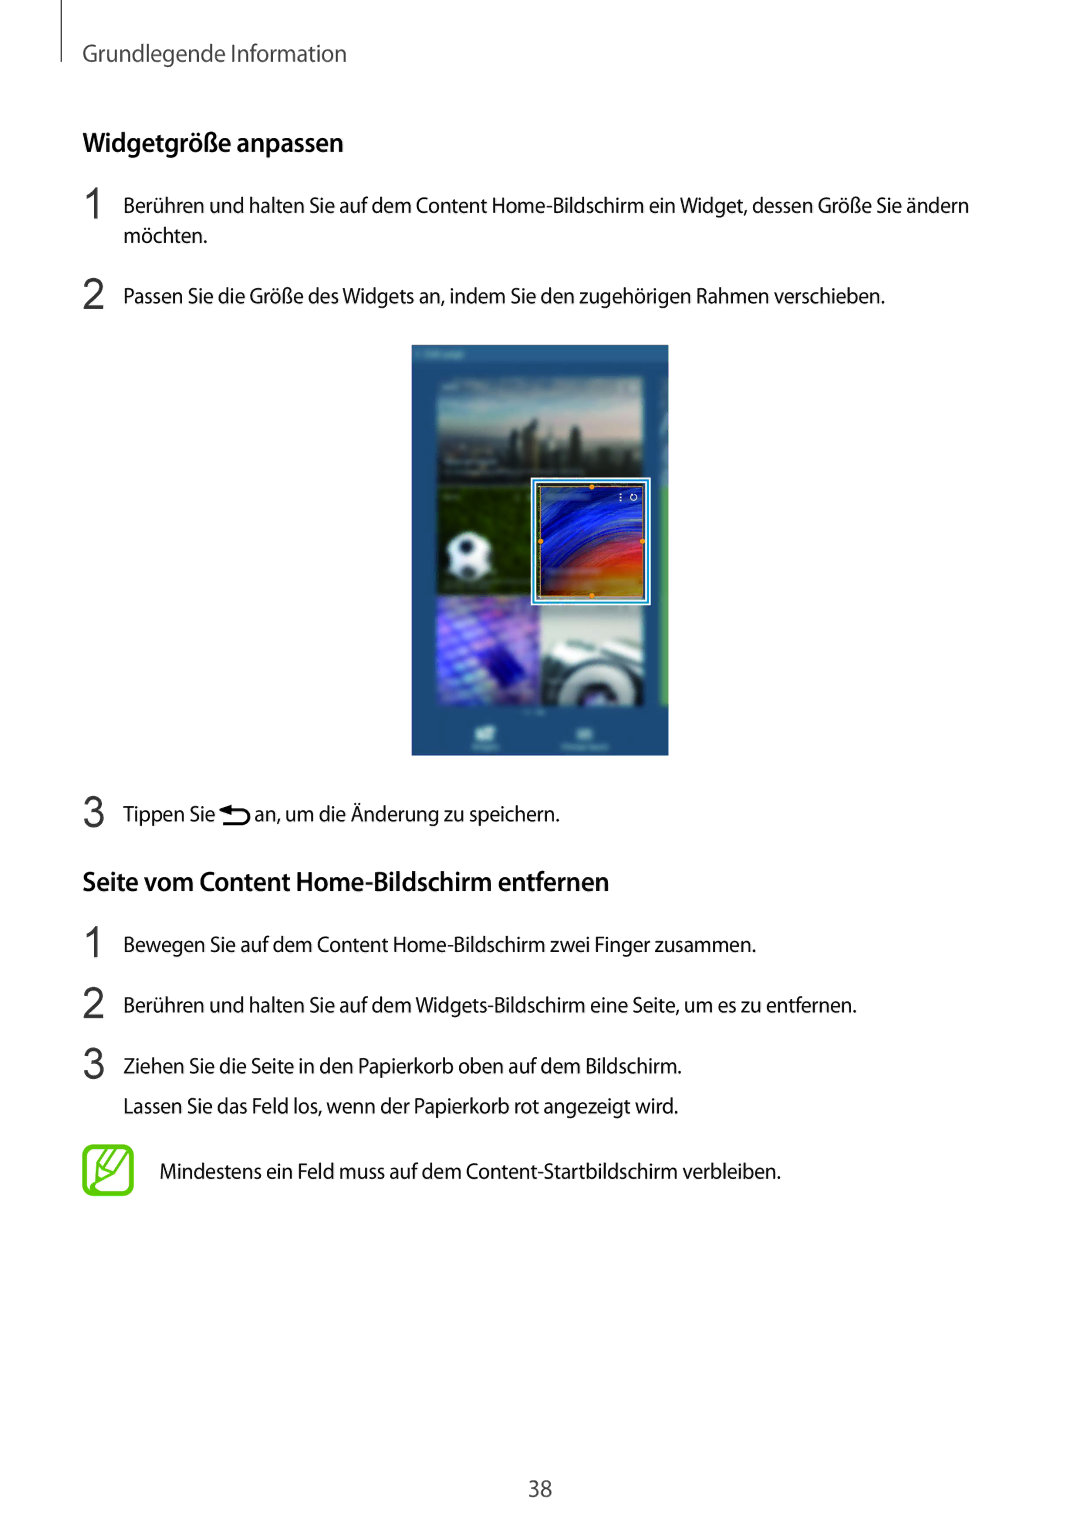 Samsung SM-T320NZWATUR, SM-T320NZKAATO, SM-T320NZKATUR Widgetgröße anpassen, Seite vom Content Home-Bildschirm entfernen 